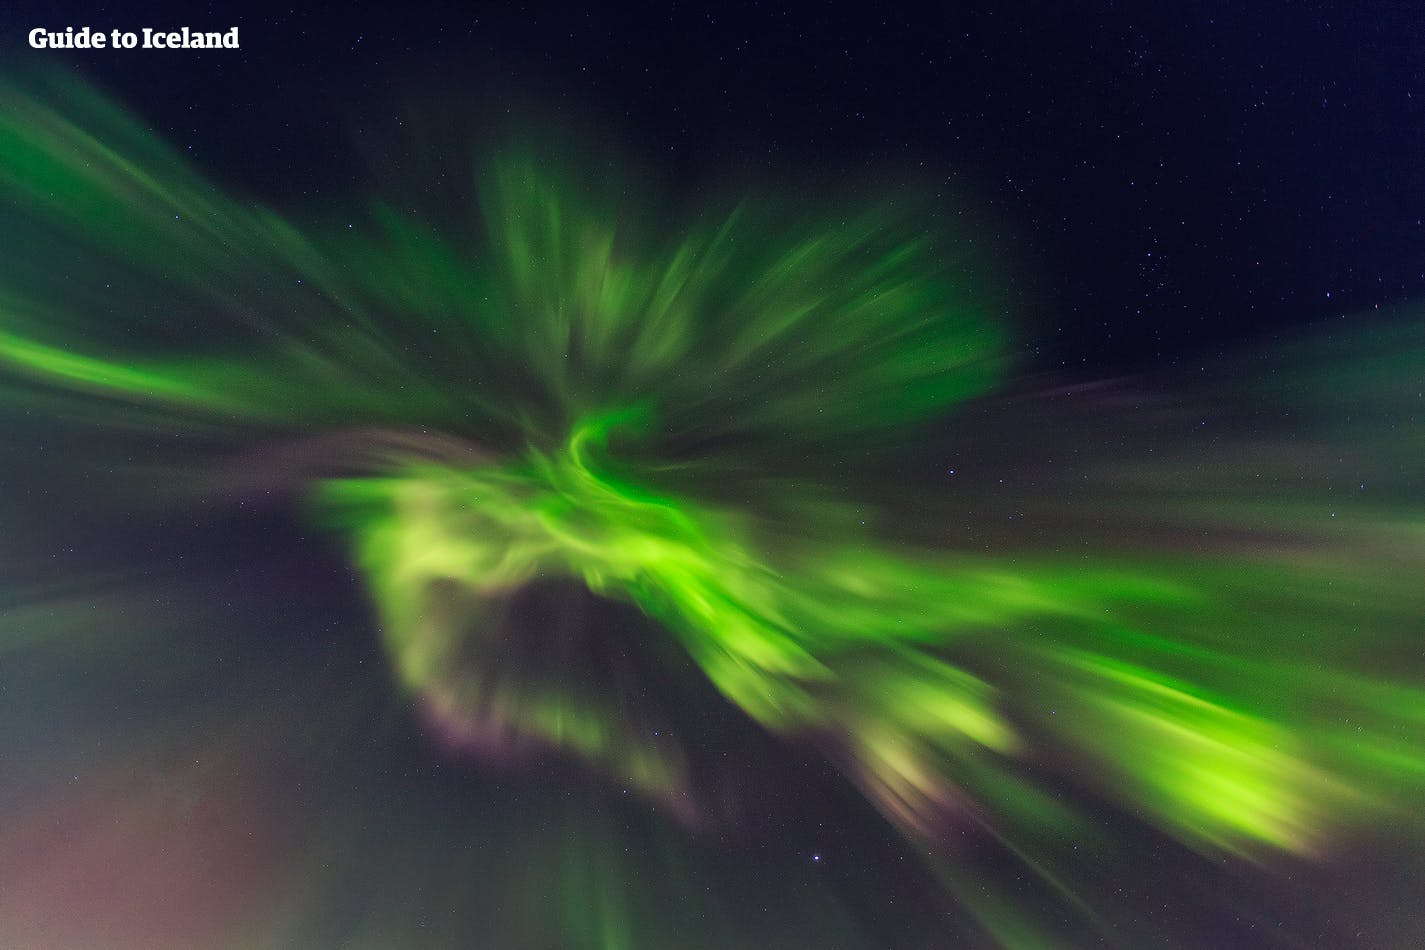 A veces, las auroras boreales brillan tanto en los cielos de Islandia y parece difícil distinguir entre sueño y realidad.